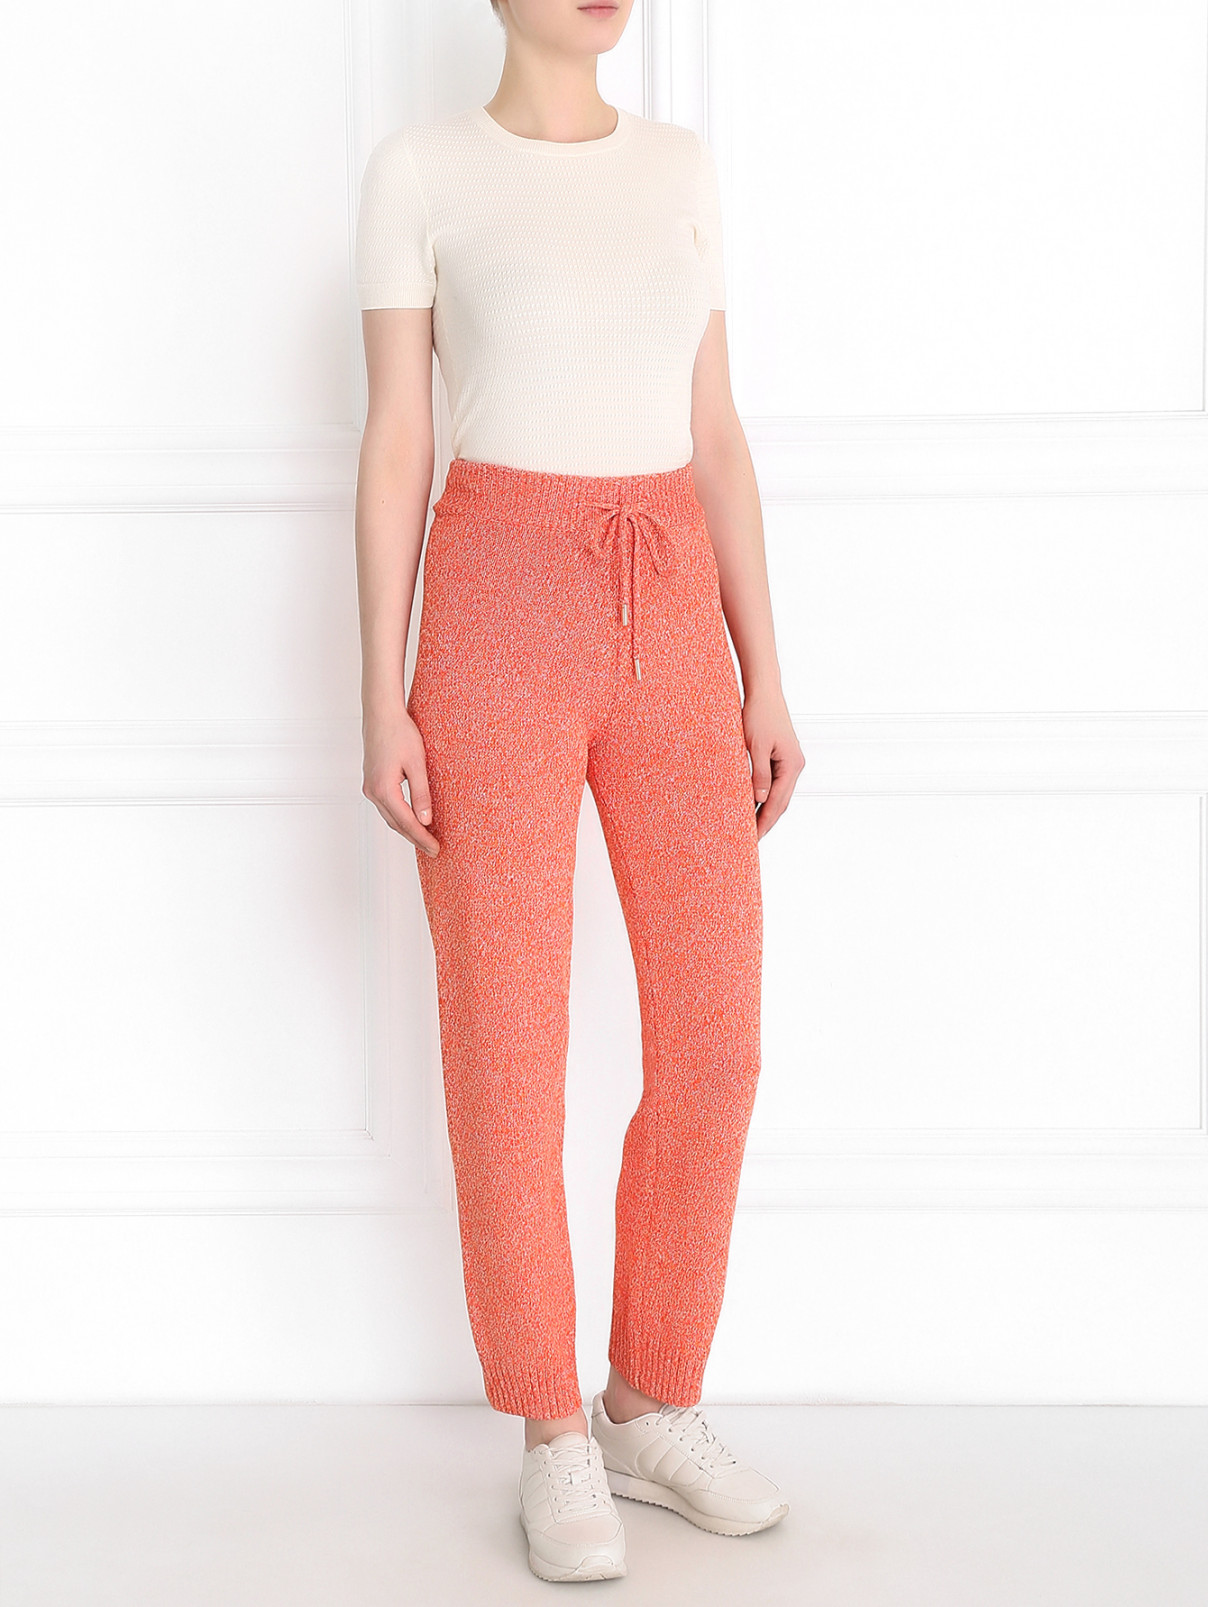 Трикотажные брюки на резинке Edition10  –  Модель Общий вид  – Цвет:  Оранжевый